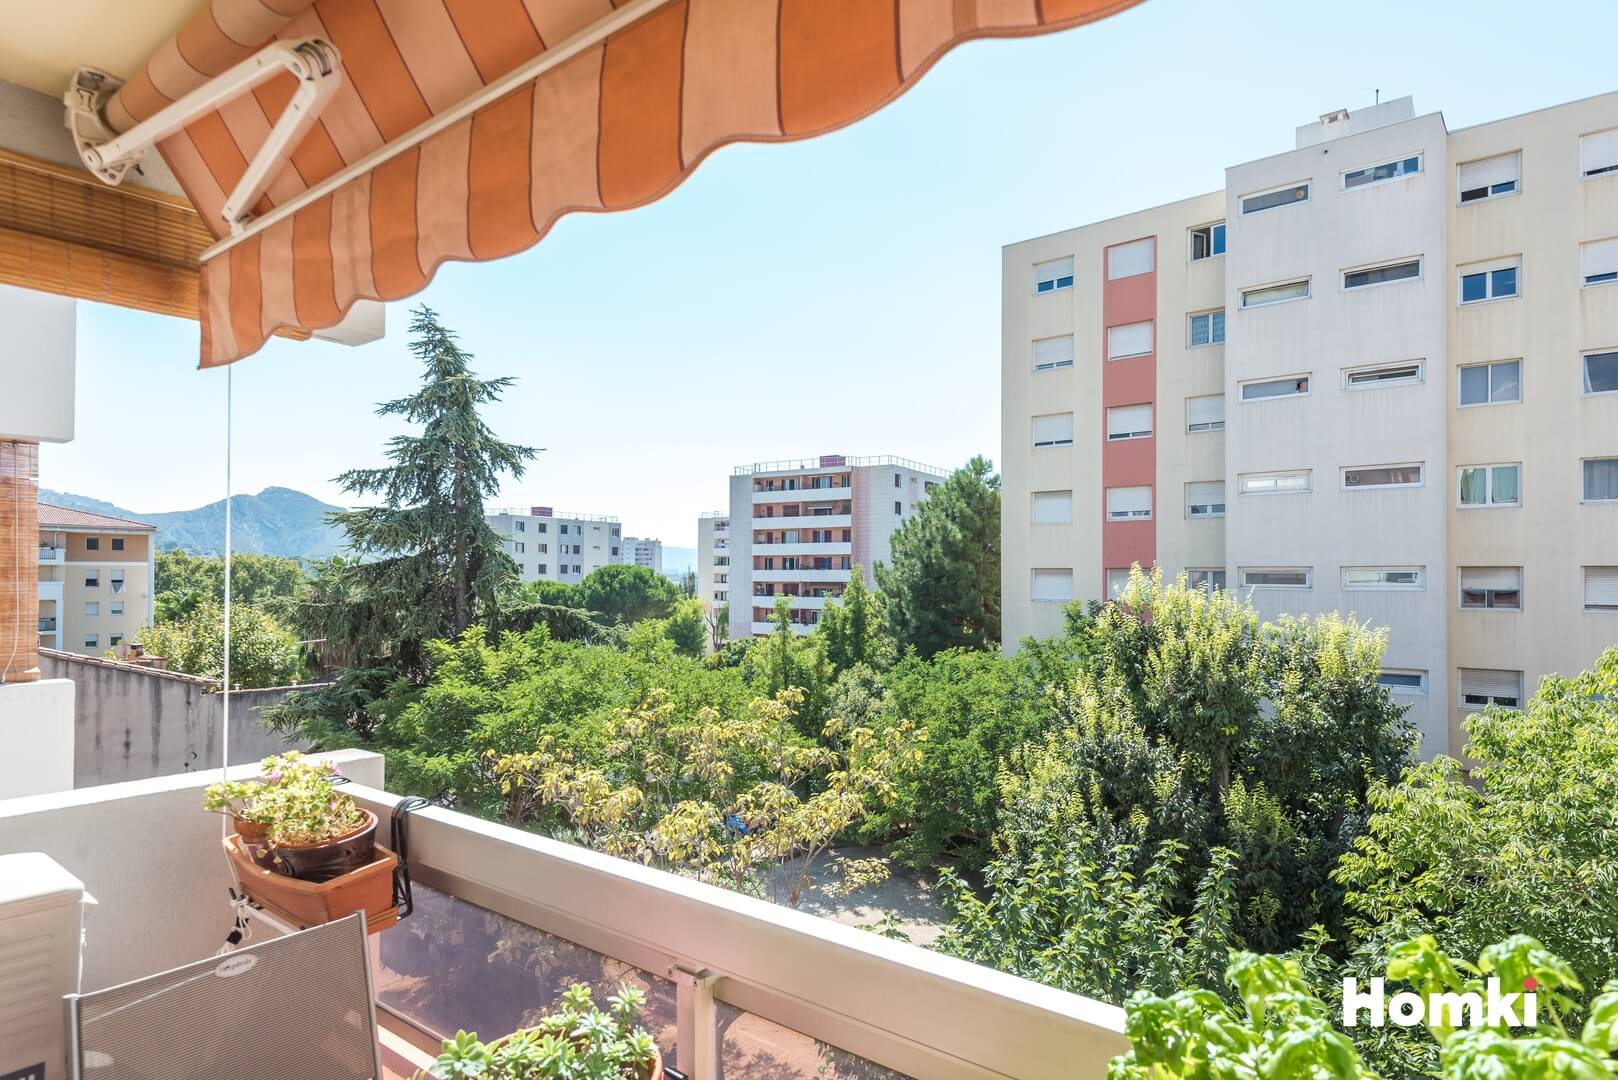 Homki - Vente Appartement  de 75.0 m² à Marseille 13011